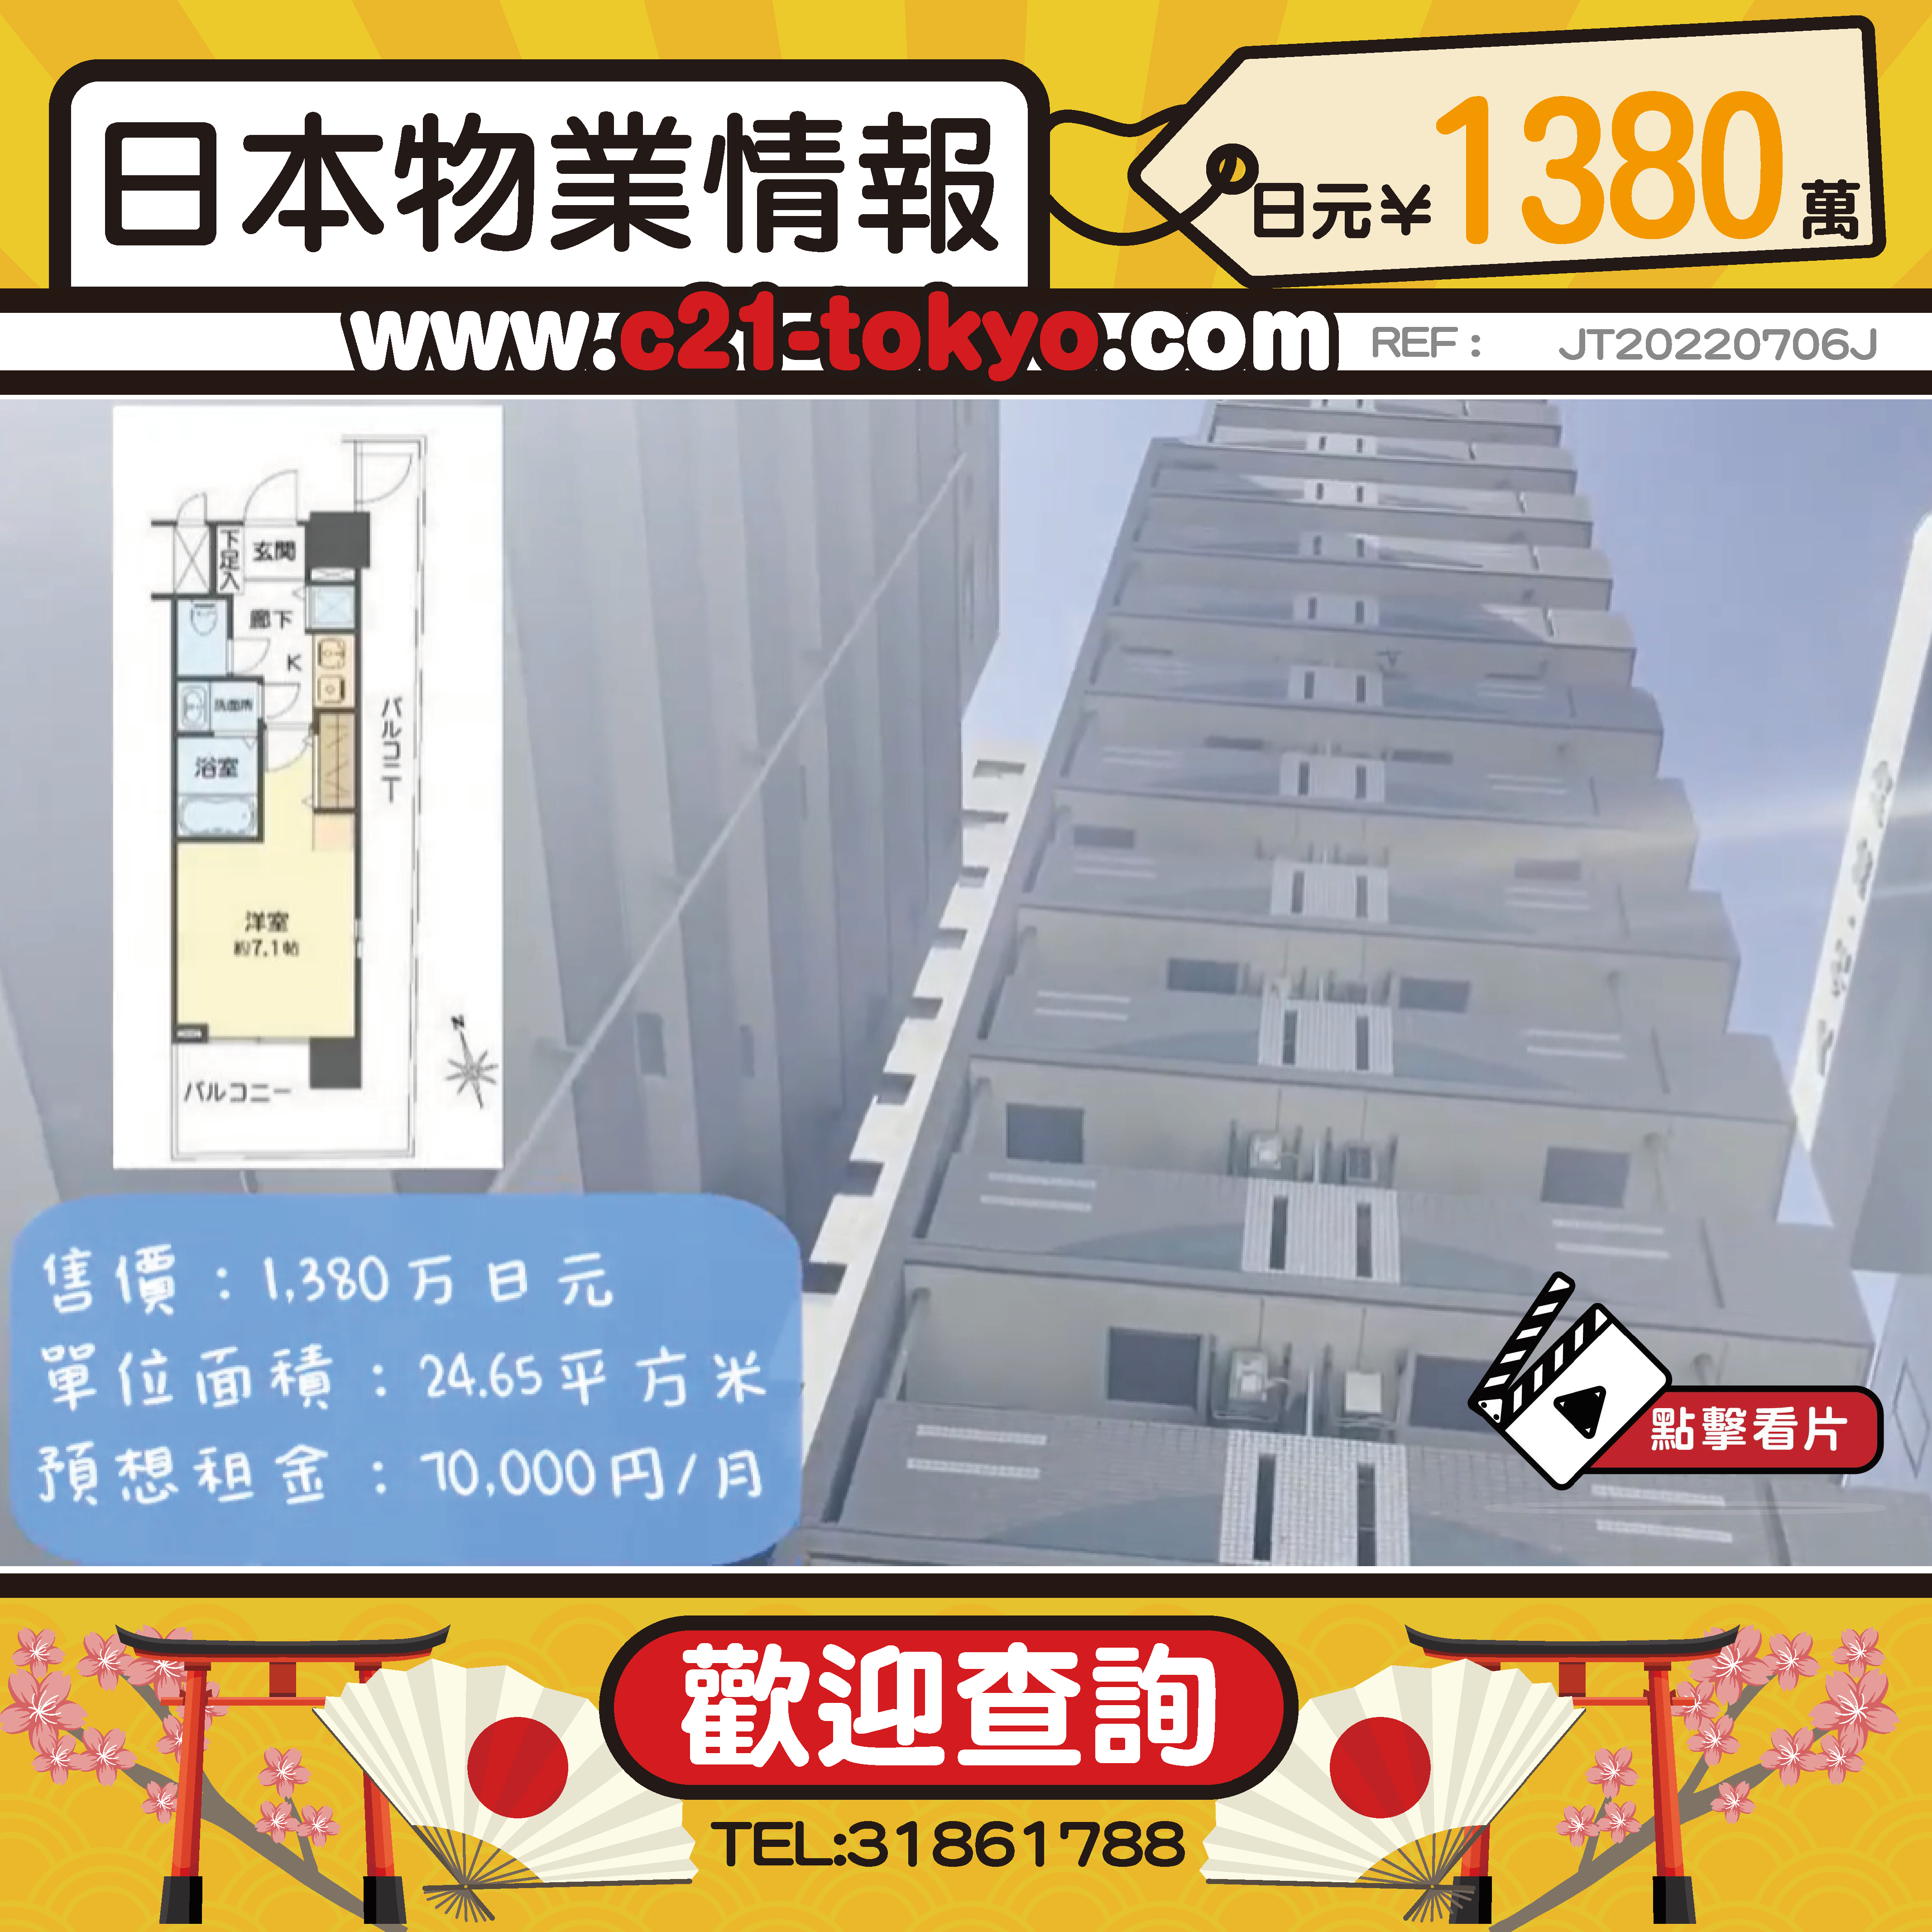 單身公寓推介篇之大阪市中央區